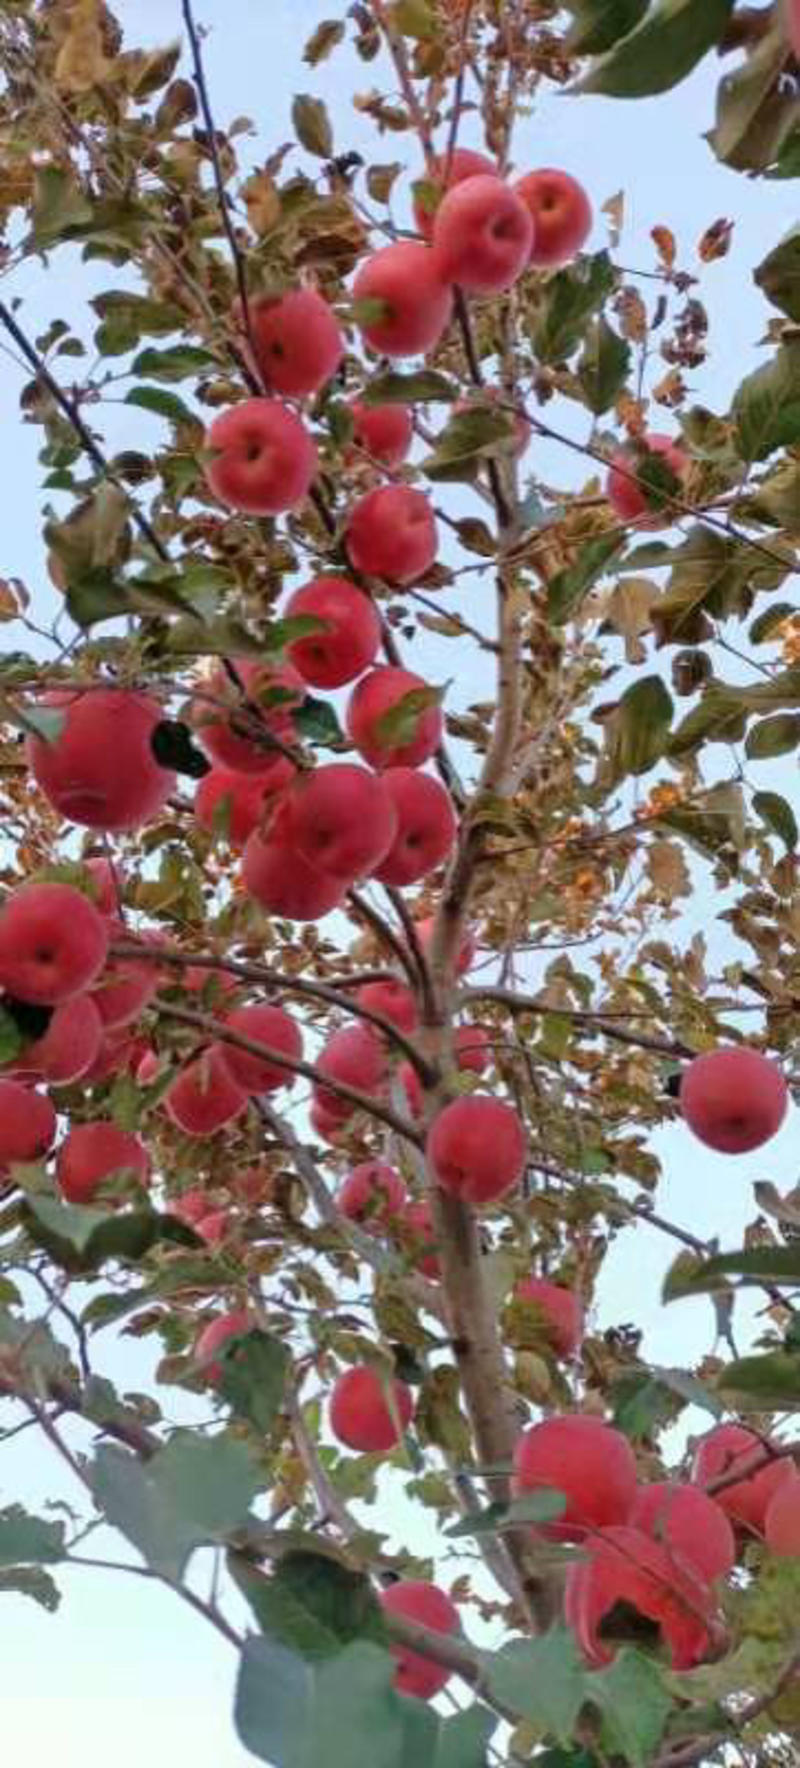 苹果葫芦岛绥中县红富士苹果现货，品质优良。